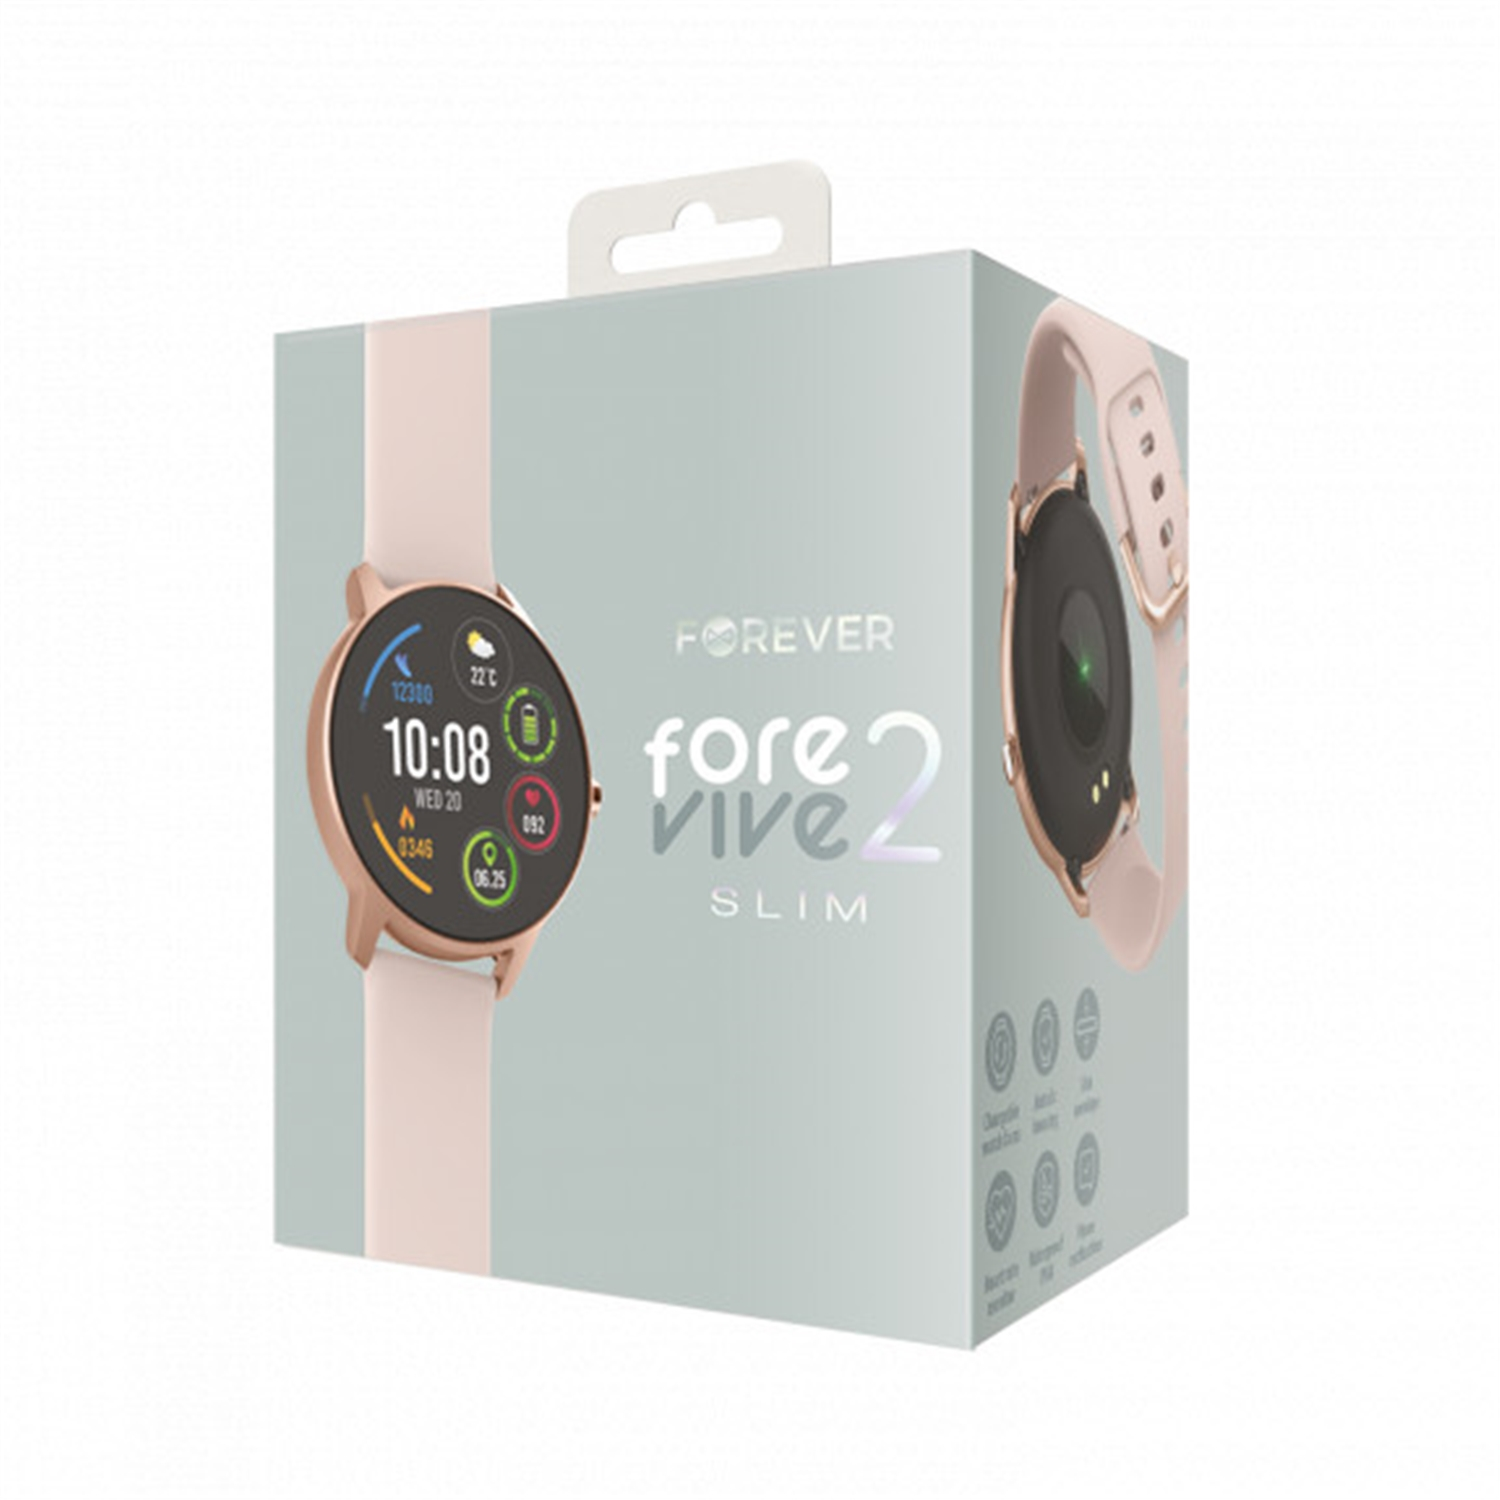 FOREVER ForeVive 2 Slim SB-326 Rosa Silikon, Smartwatch